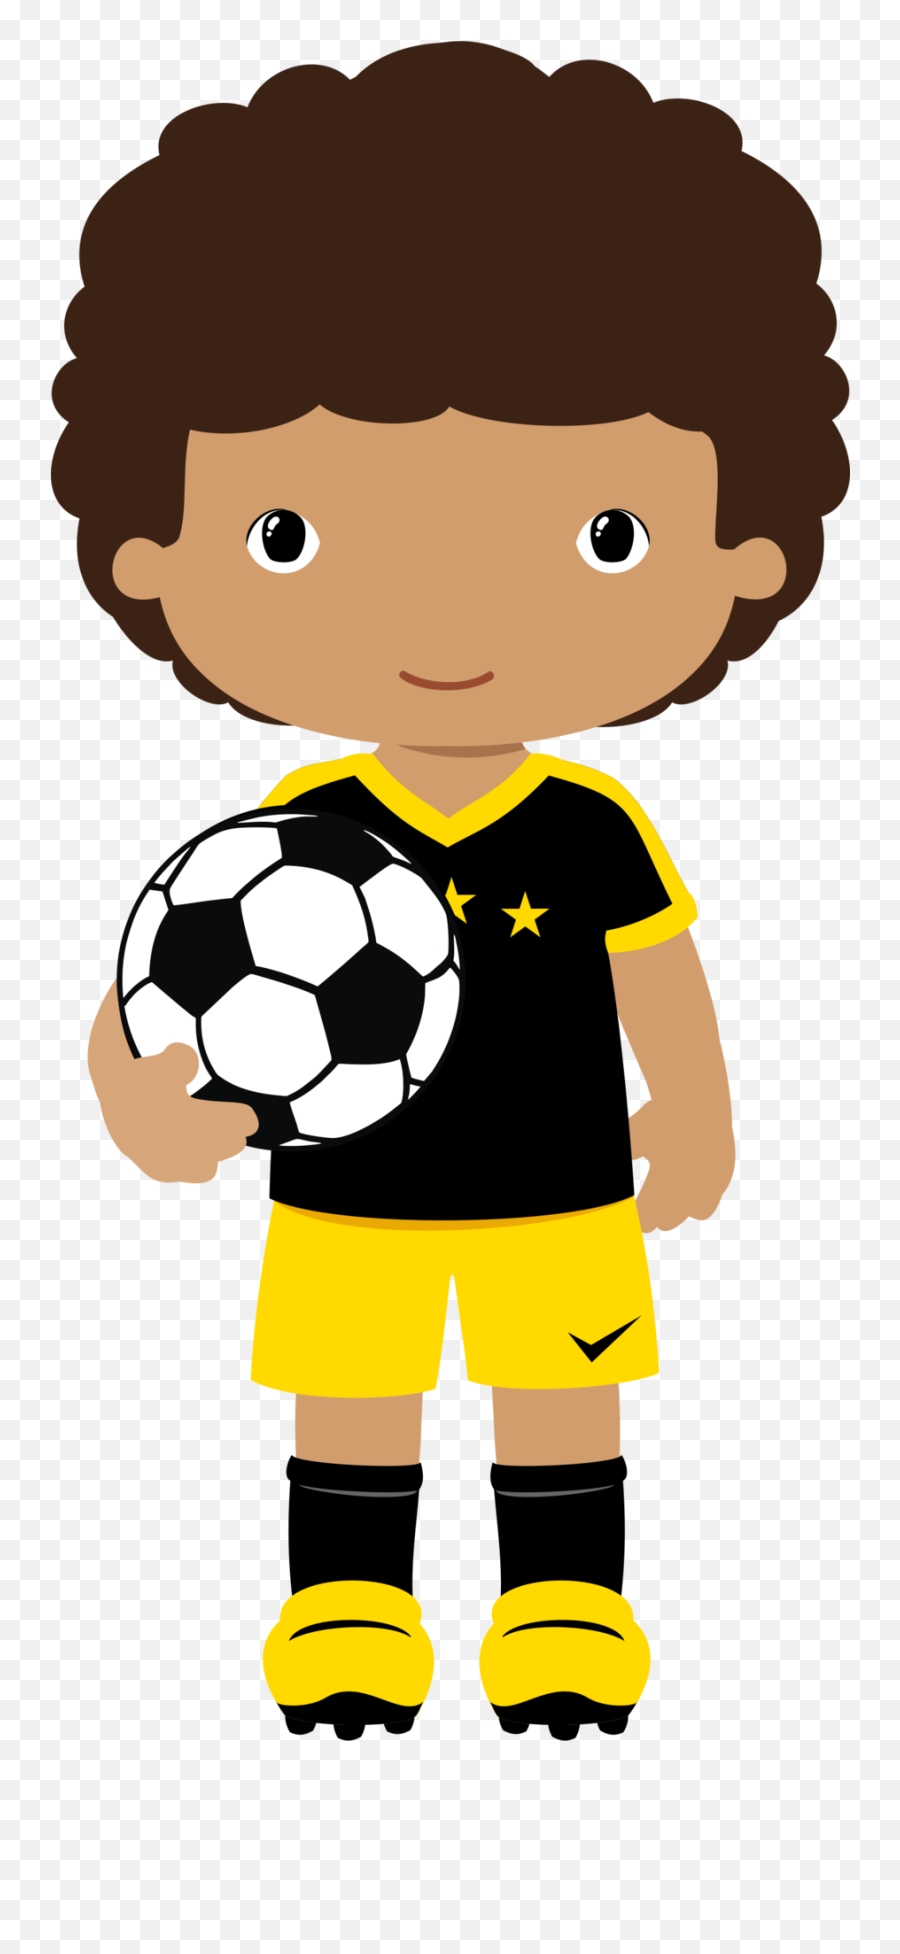 4shared - Ver Todas Las Imágenes De La Carpeta Png Baby Emoji,Girls Soccer Clipart